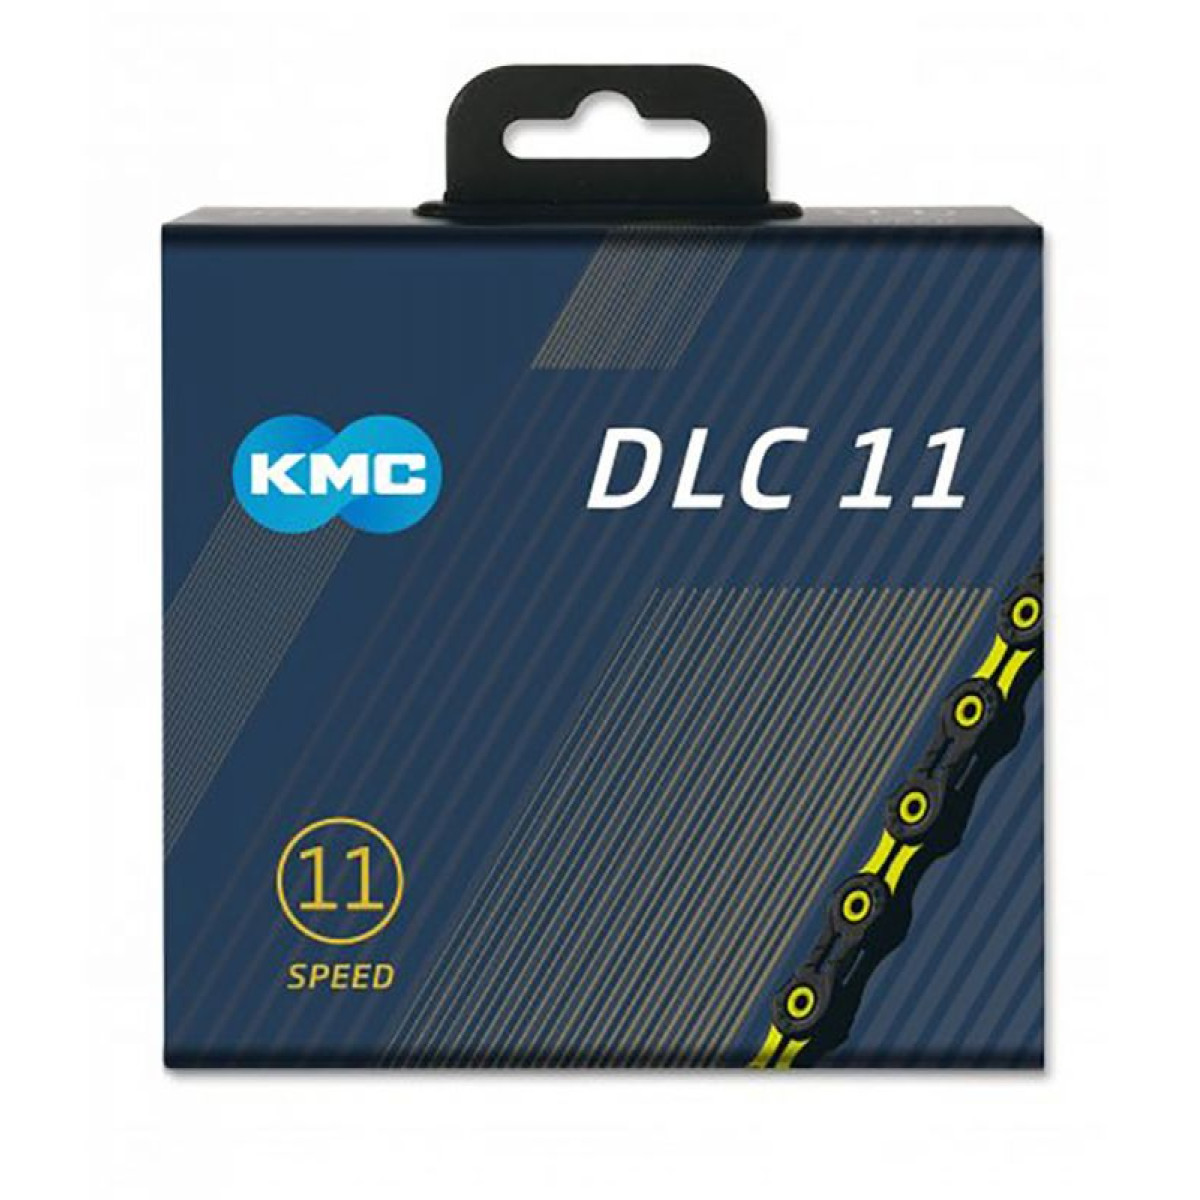 KMC DLC11 grandinė / 11 pavarų / Black - Yellow